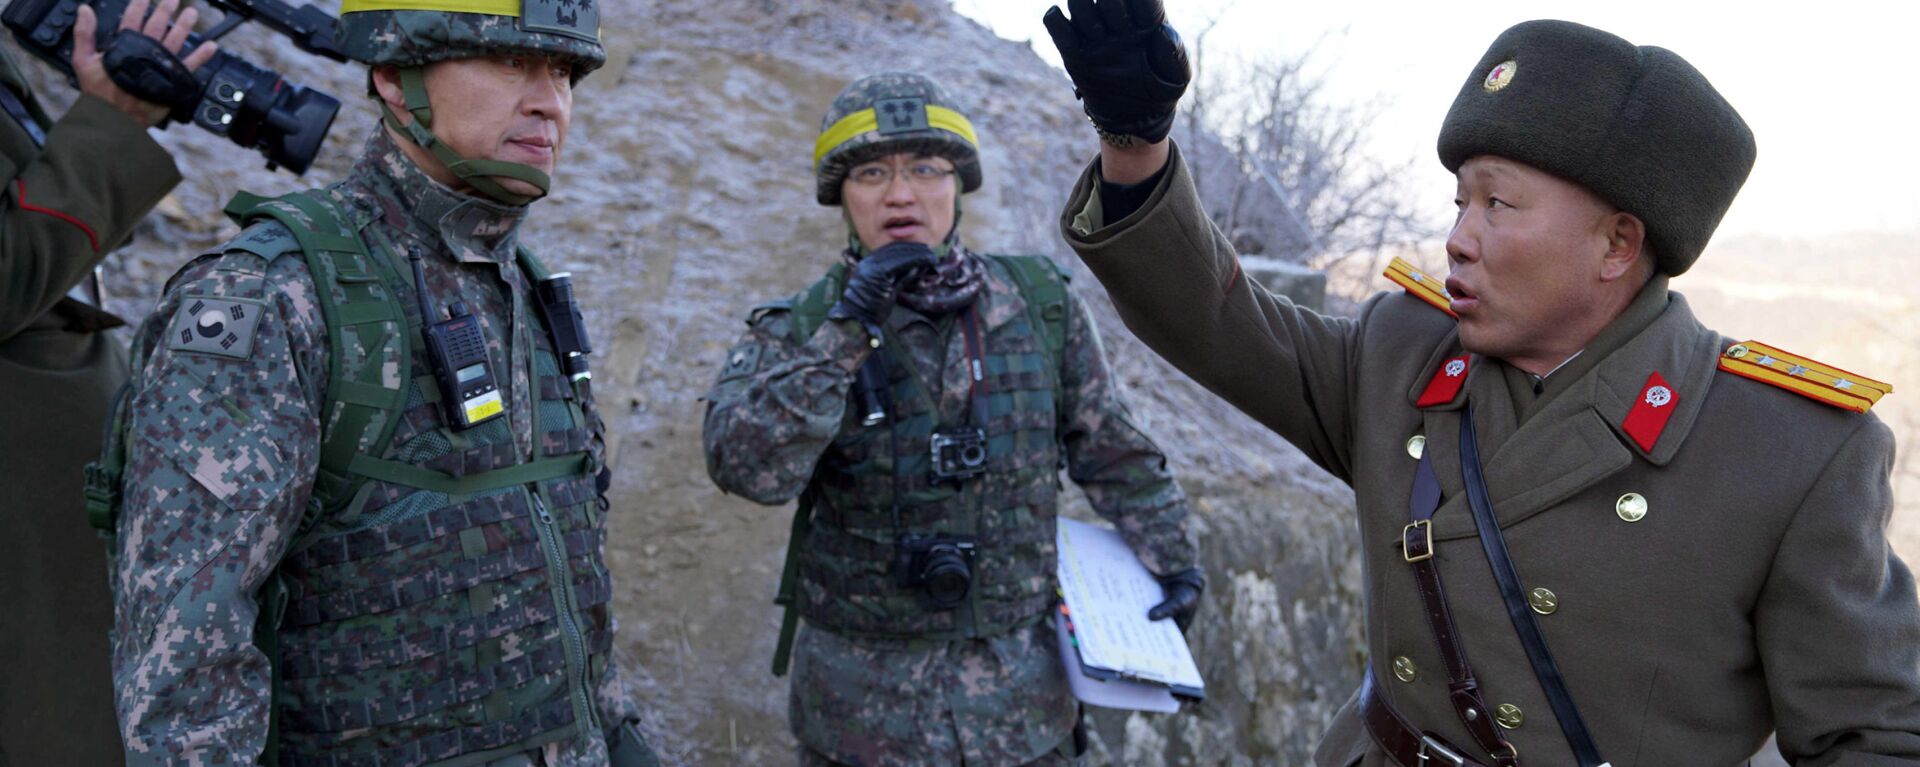 الحدود بين كوريا الجنوبية و كوريا الشمالية - الجنود - الجيش الكوري الجنوبي والشمالي، 12 ديسمبر/ كانون الأول 2018 - سبوتنيك عربي, 1920, 01.04.2022